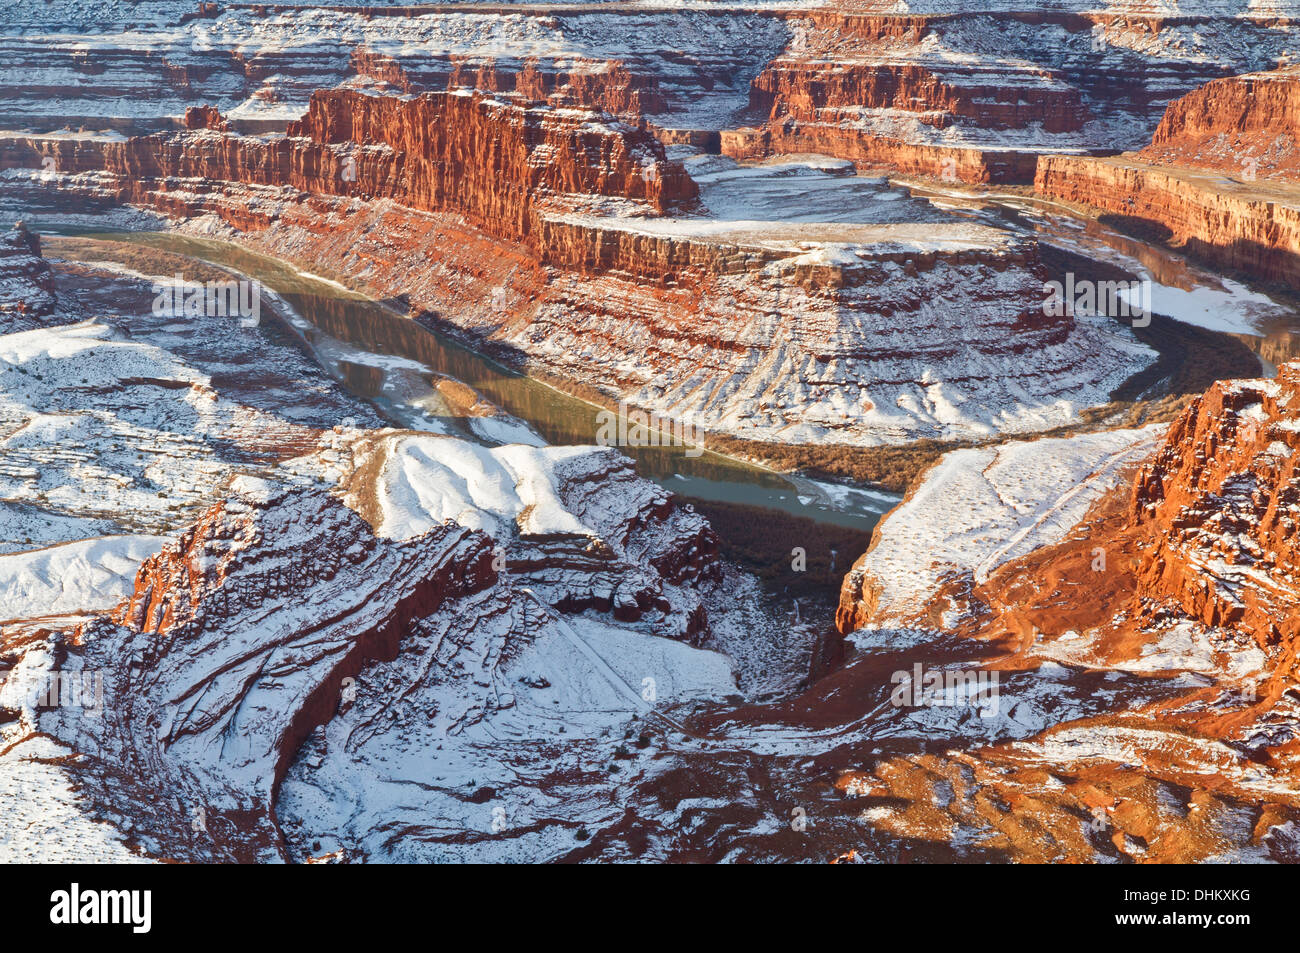 Una mesa de cuello de cisne refleja parcialmente congelada en el Río Colorado, visto de Dead Horse Point vistas en Utah. Foto de stock